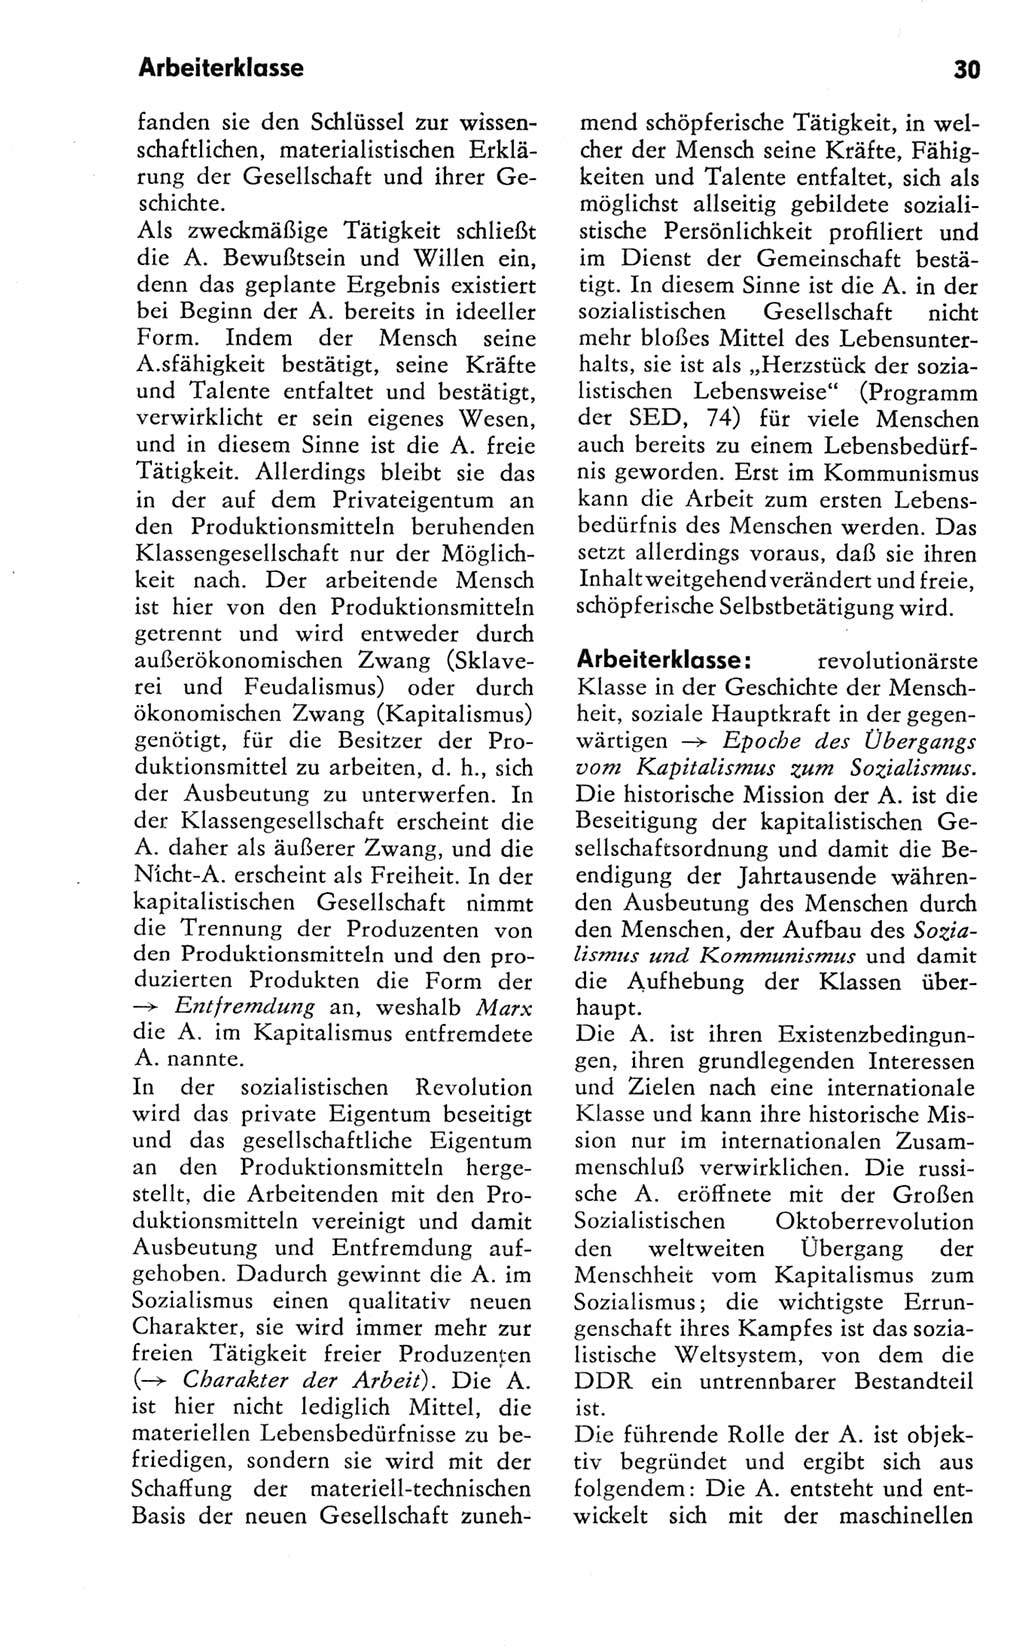 Kleines Wörterbuch der marxistisch-leninistischen Philosophie [Deutsche Demokratische Republik (DDR)] 1981, Seite 30 (Kl. Wb. ML Phil. DDR 1981, S. 30)